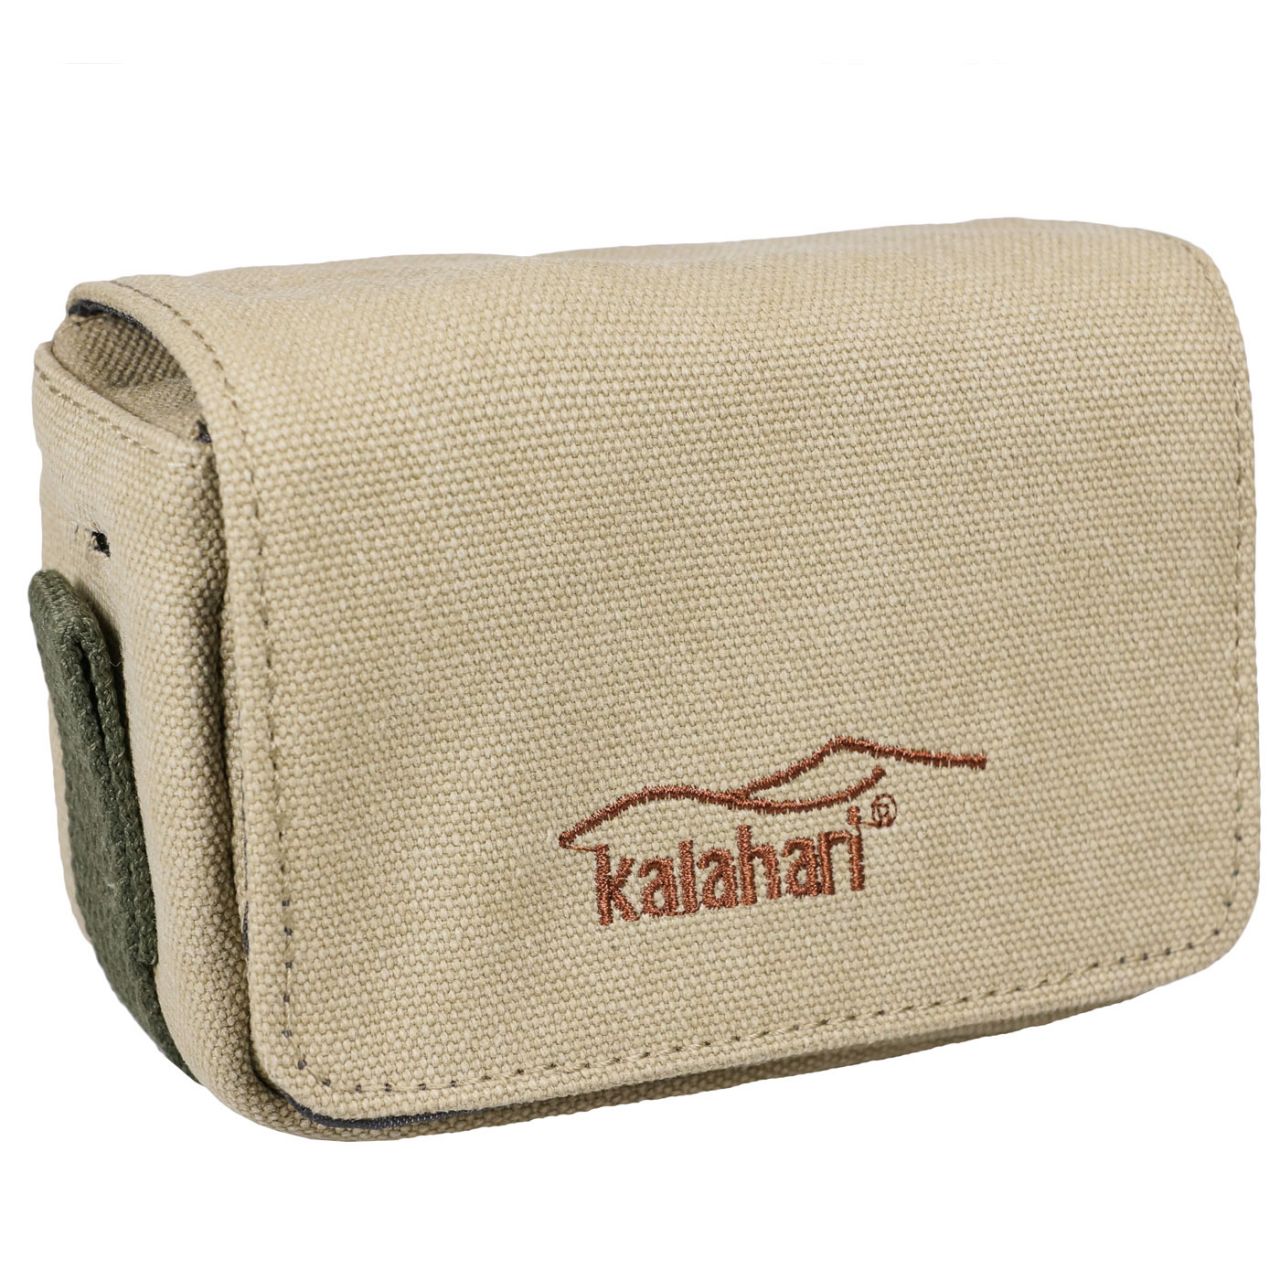 Kalahari GOBABIS K-9 vászon kompakt fényképezőgép tok, khaki